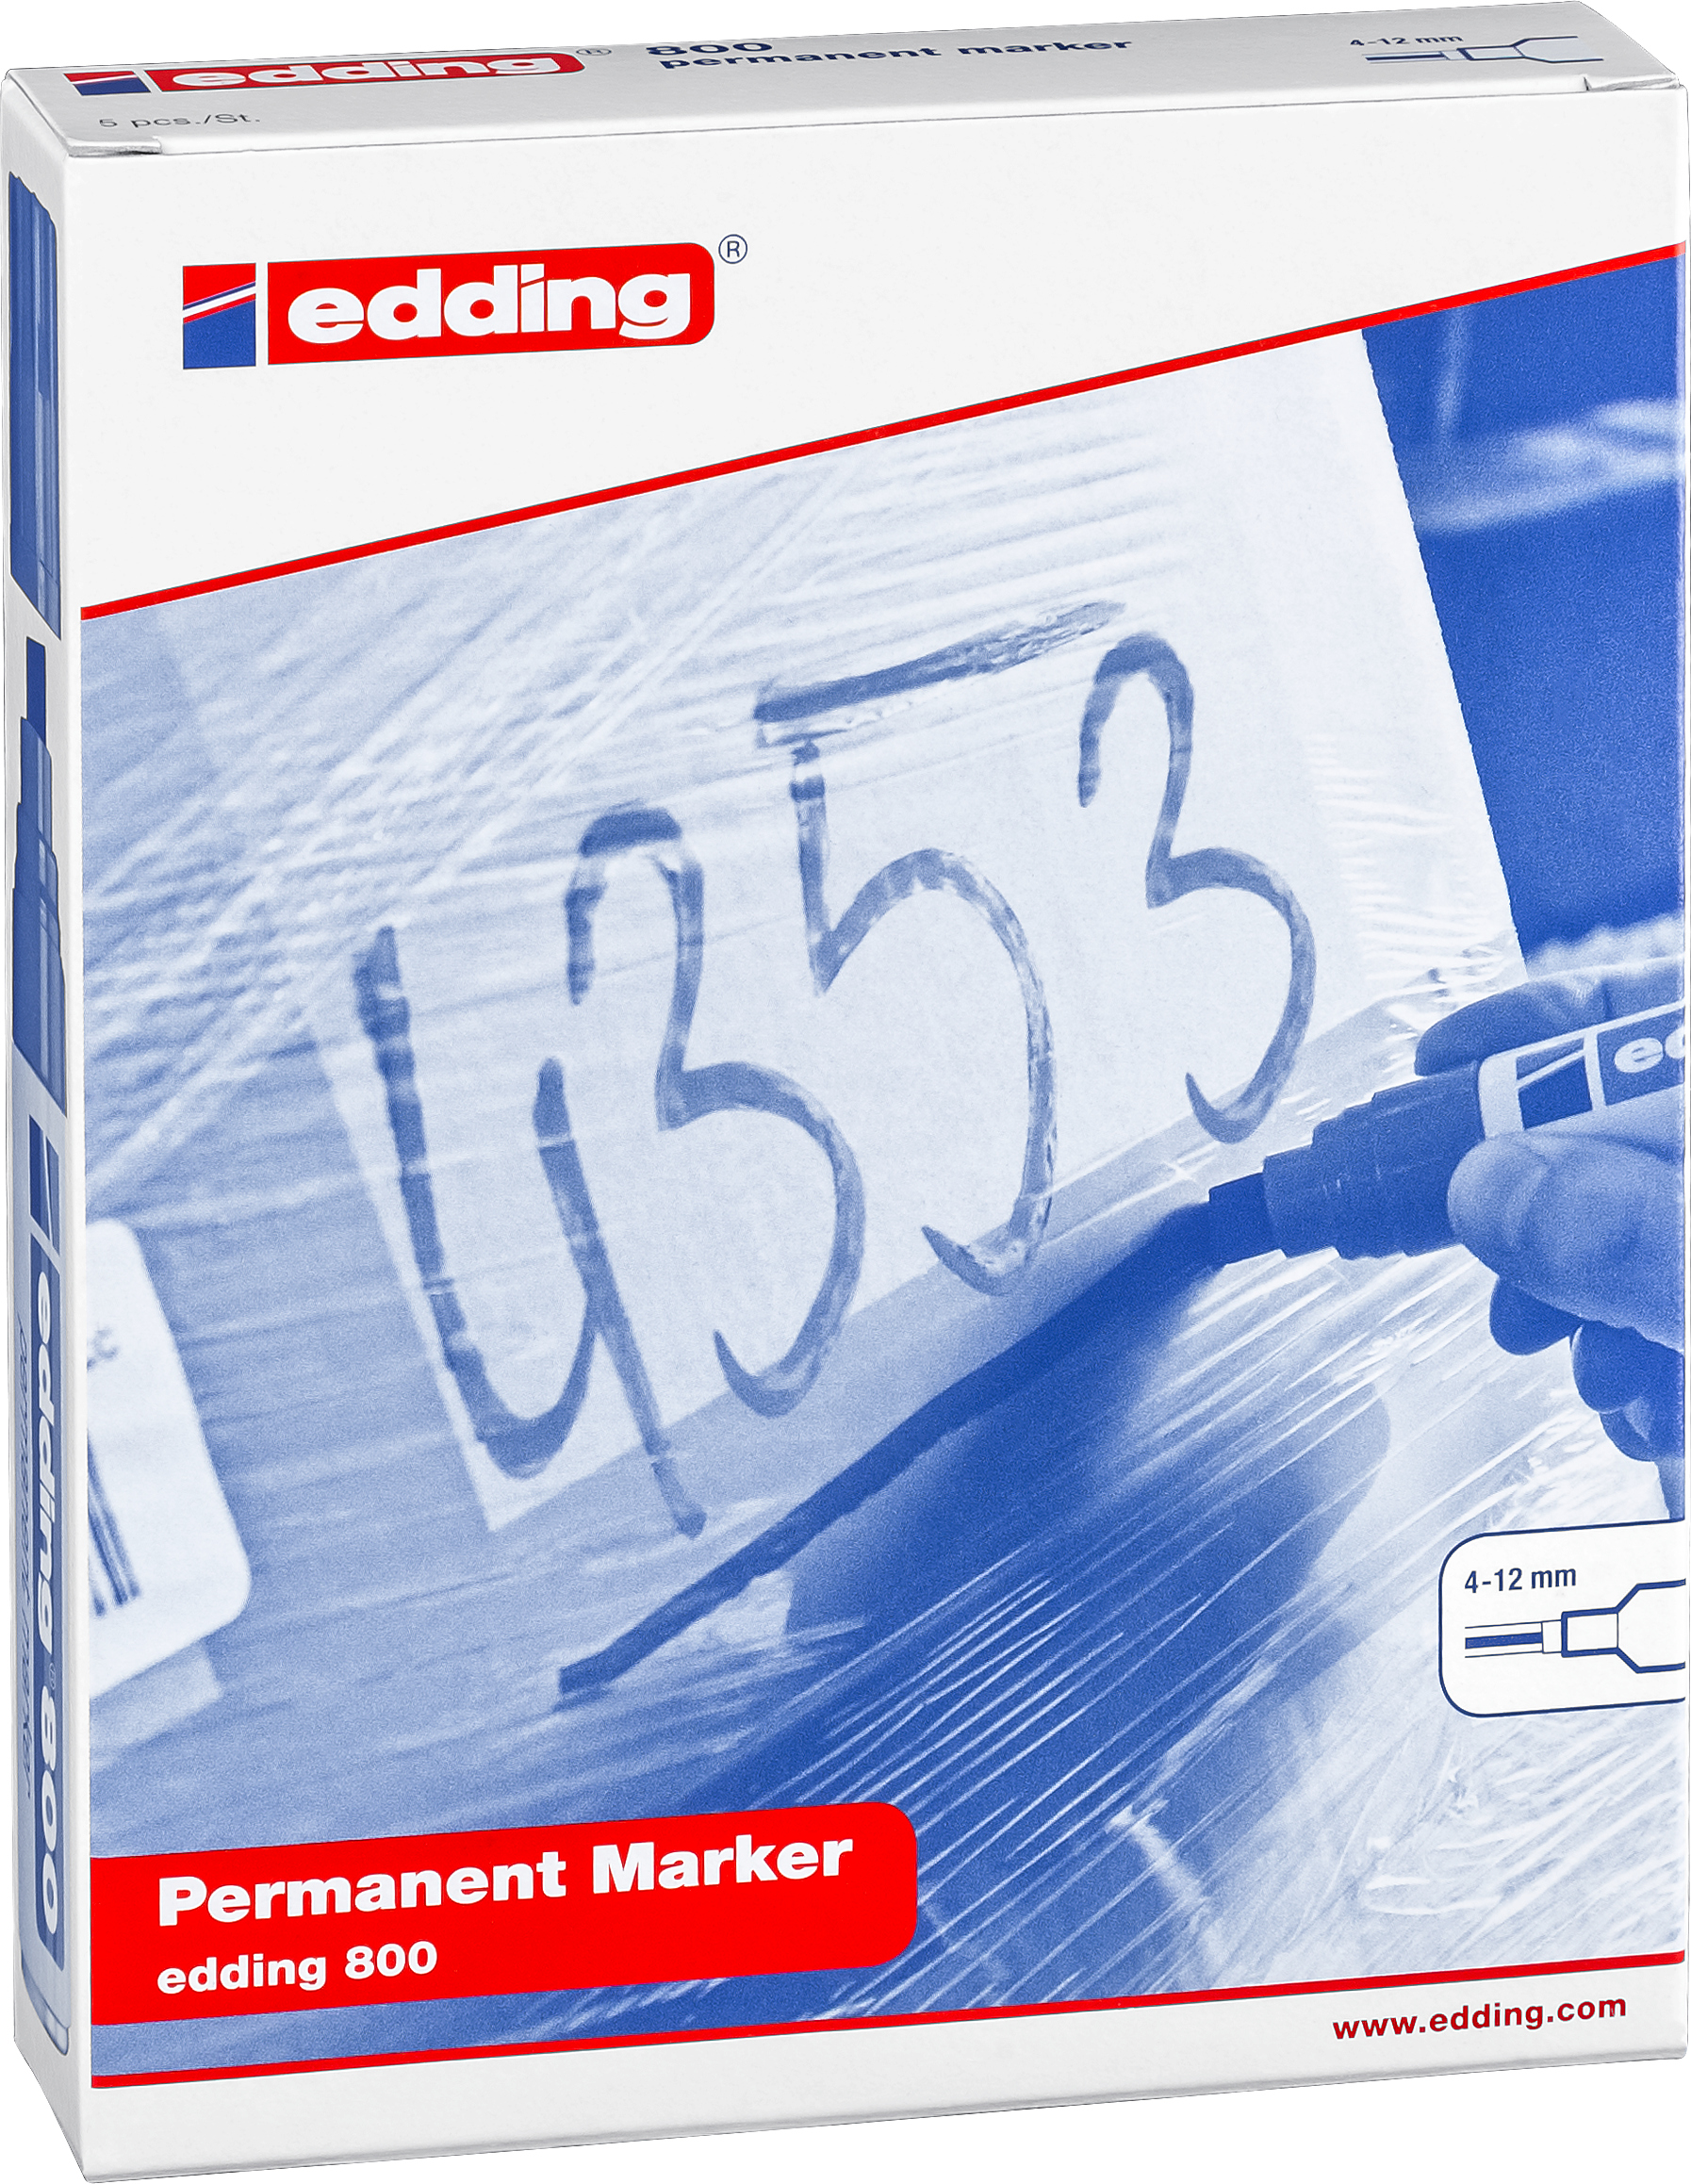 EDDING Permanent Marker 800 4-12mm 800-99 5 couleurs